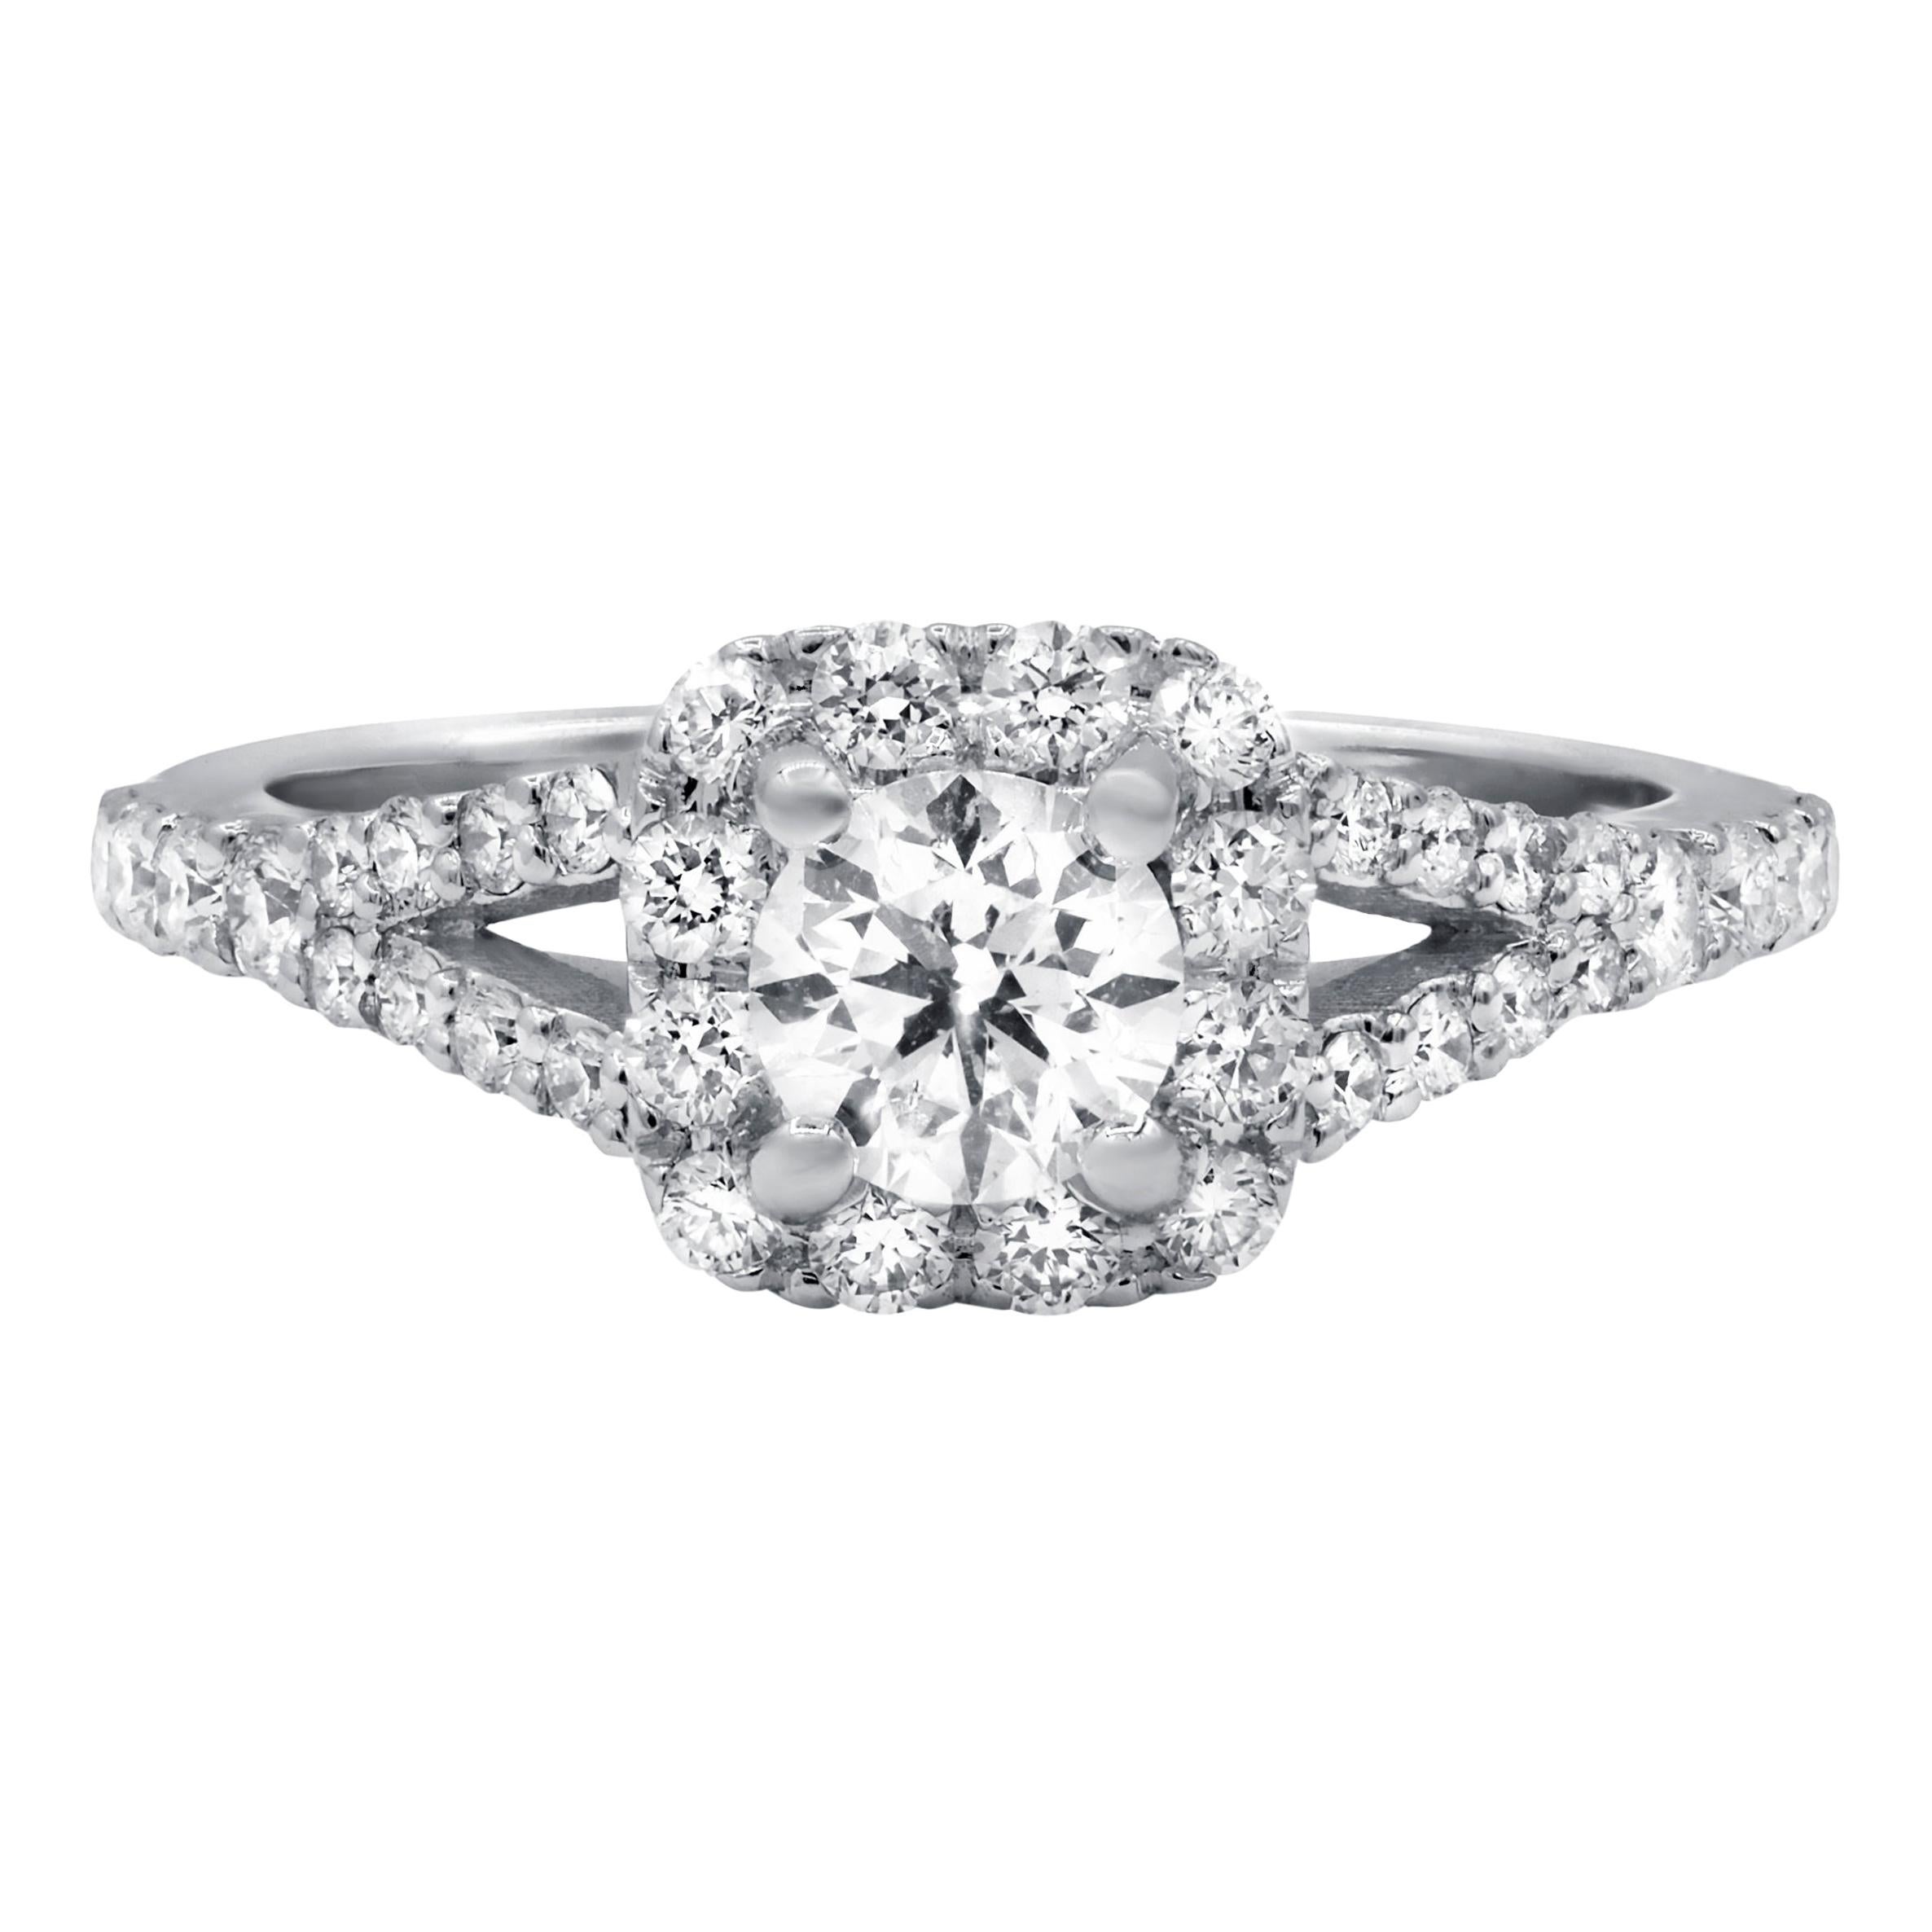 Diana M. Fine Jewelry 14k 1.11 Ct. Tw. Diamond Ring